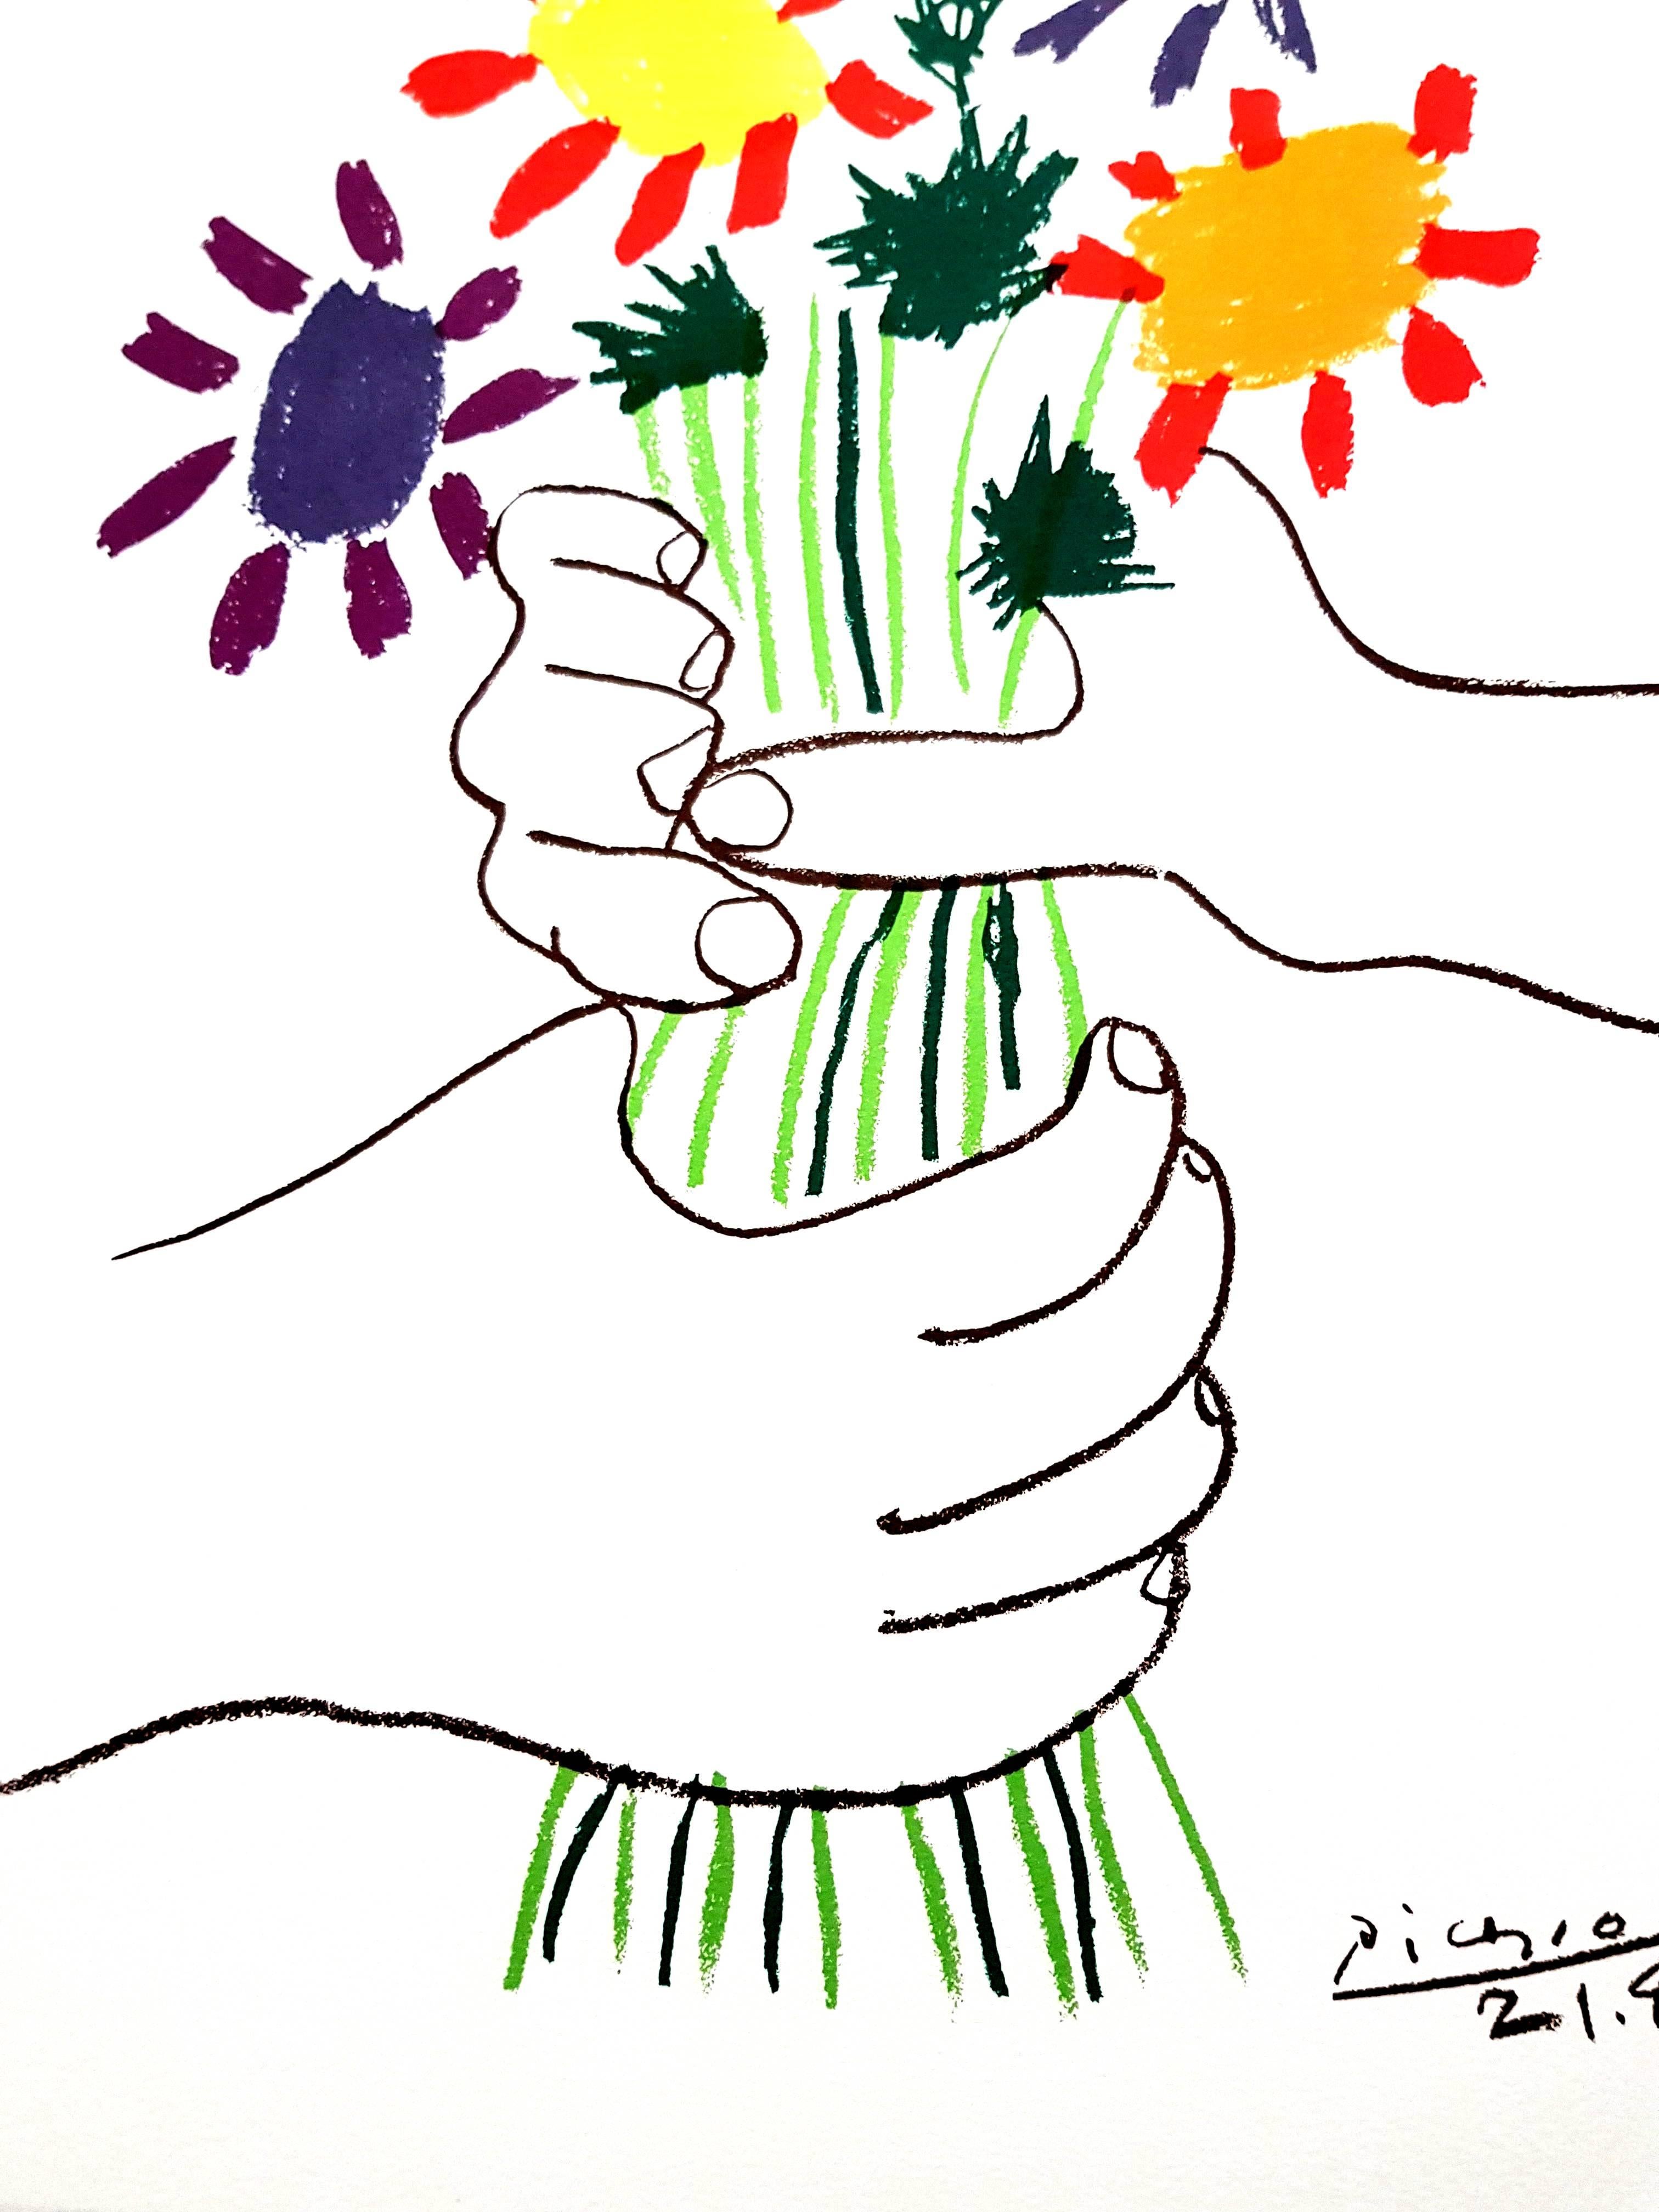 Nach PABLO PICASSO (1881-1973)
Bunte Blumen
1958
Abmessungen: 65 x 50 cm
Signiert und datiert in der Platte
Edition Succession Picasso, Paris (posthume Reproduktionsausgabe)
Ausgaben von Paix